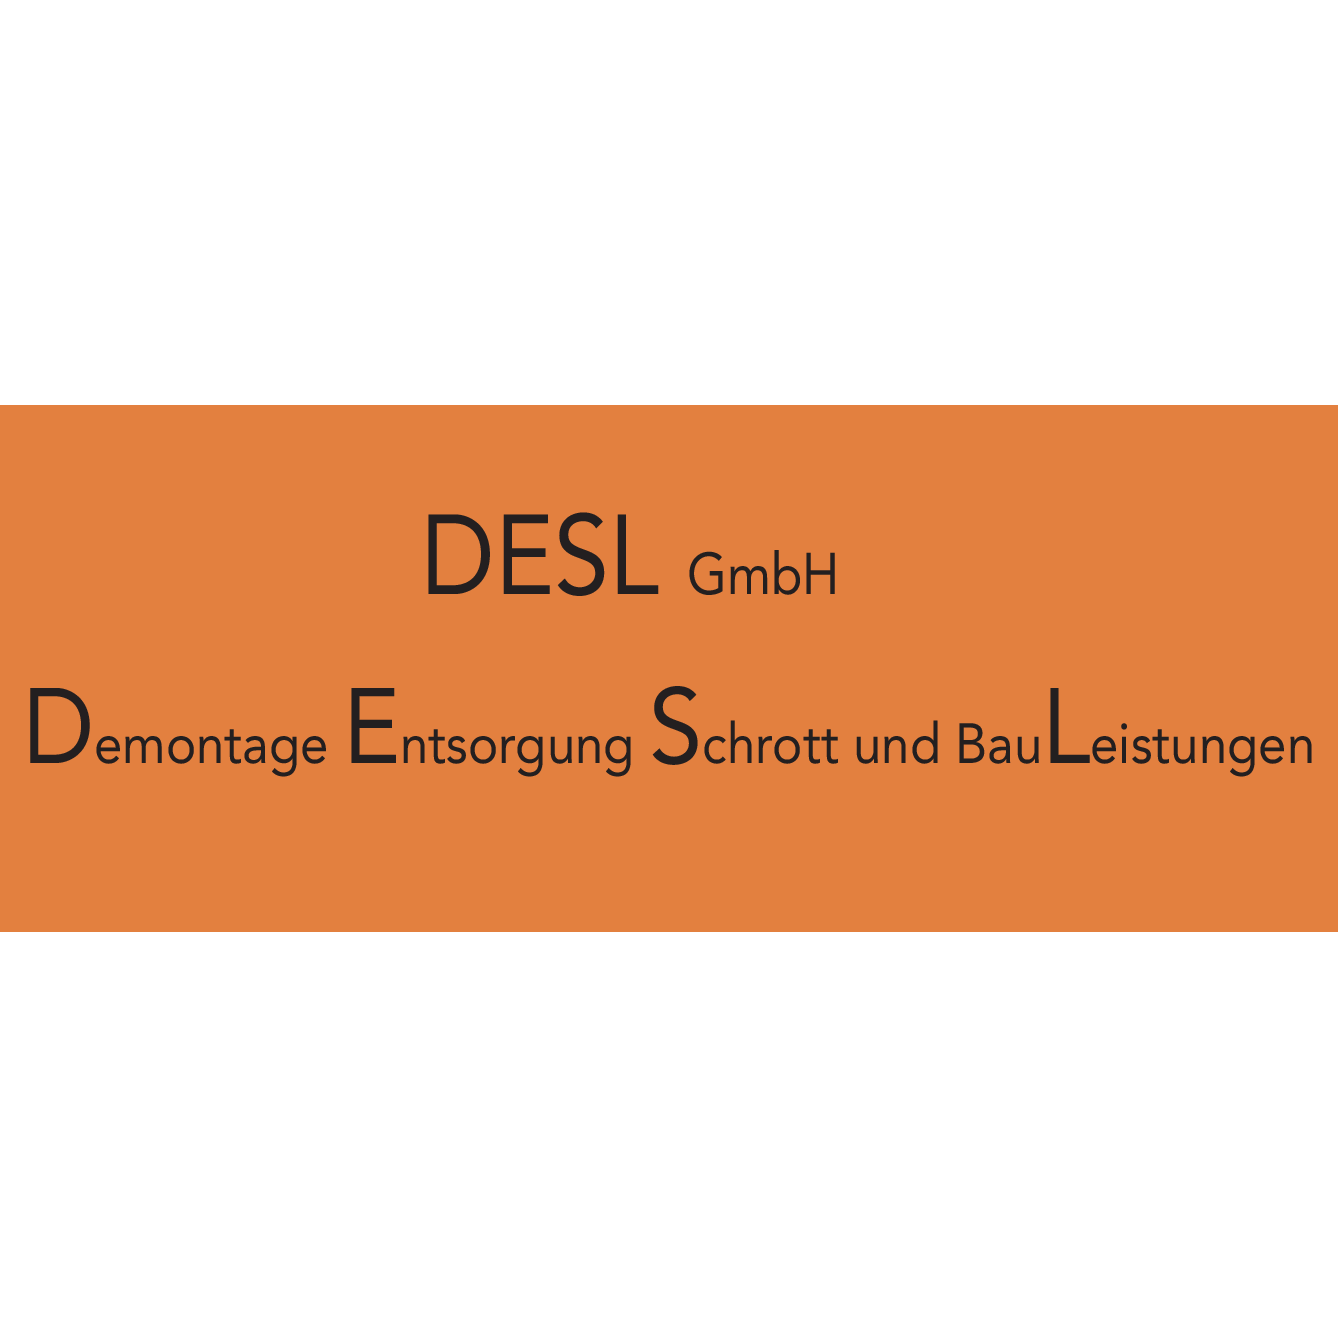 Desl GmbH in Ludwigsfelde - Logo